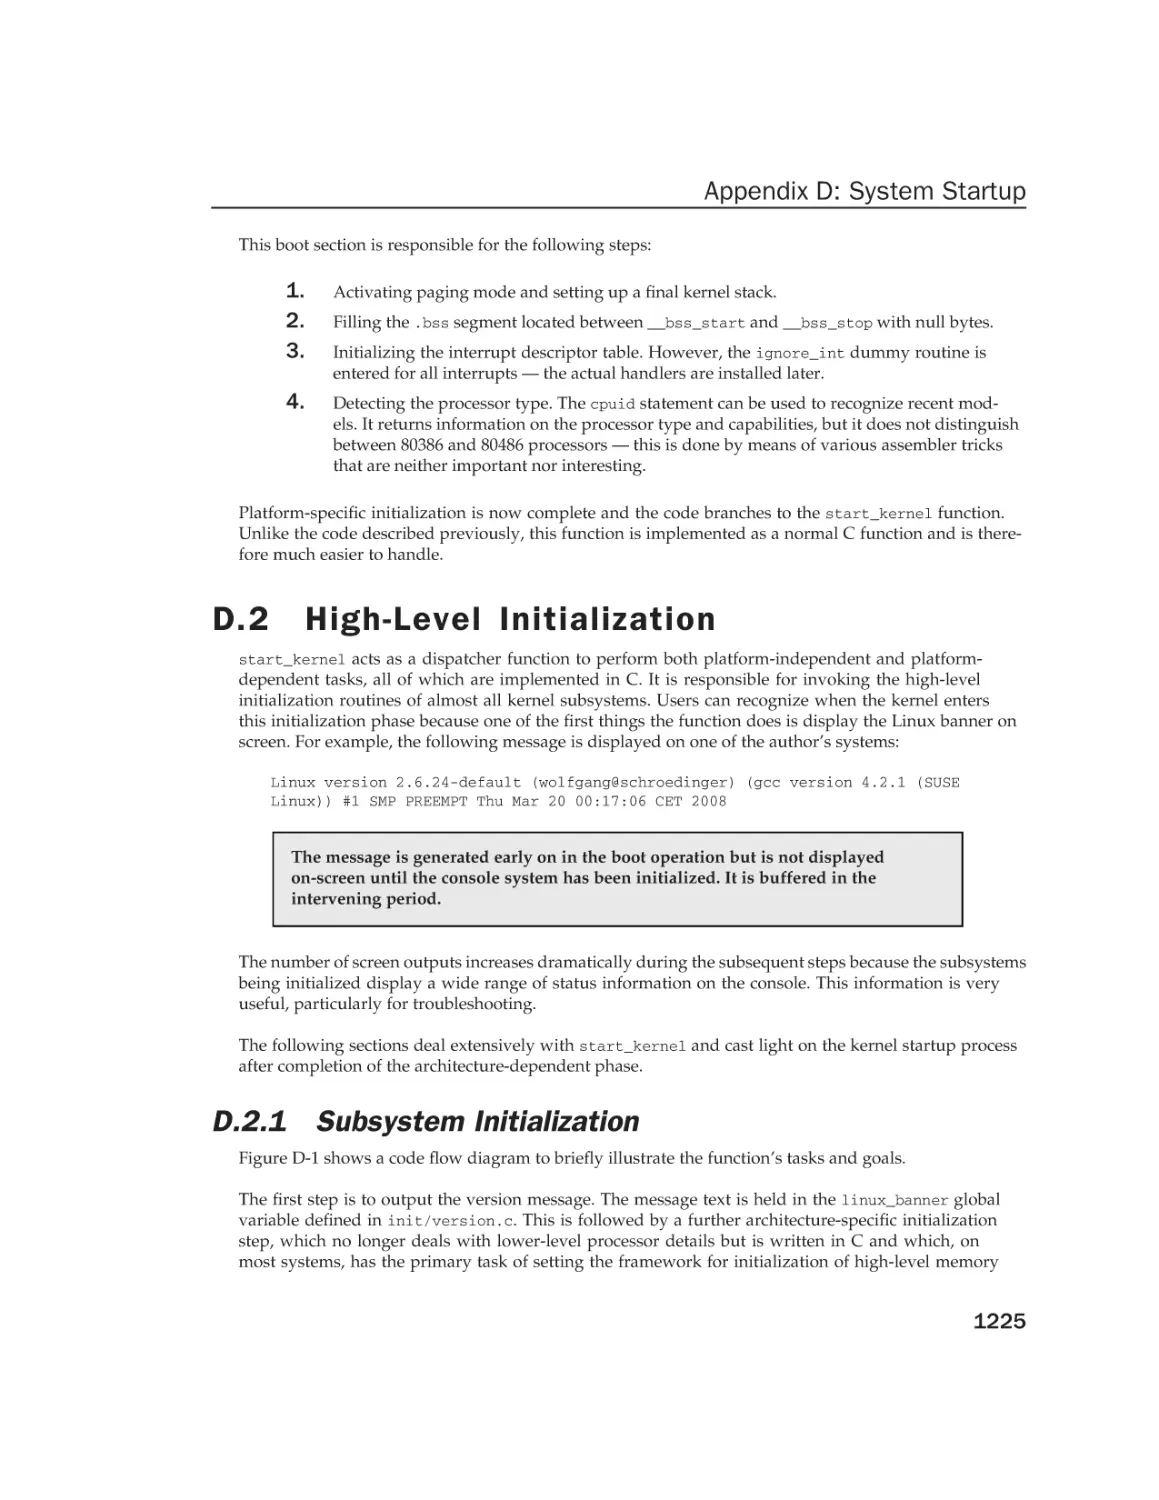 D.2 High-Level Initialization